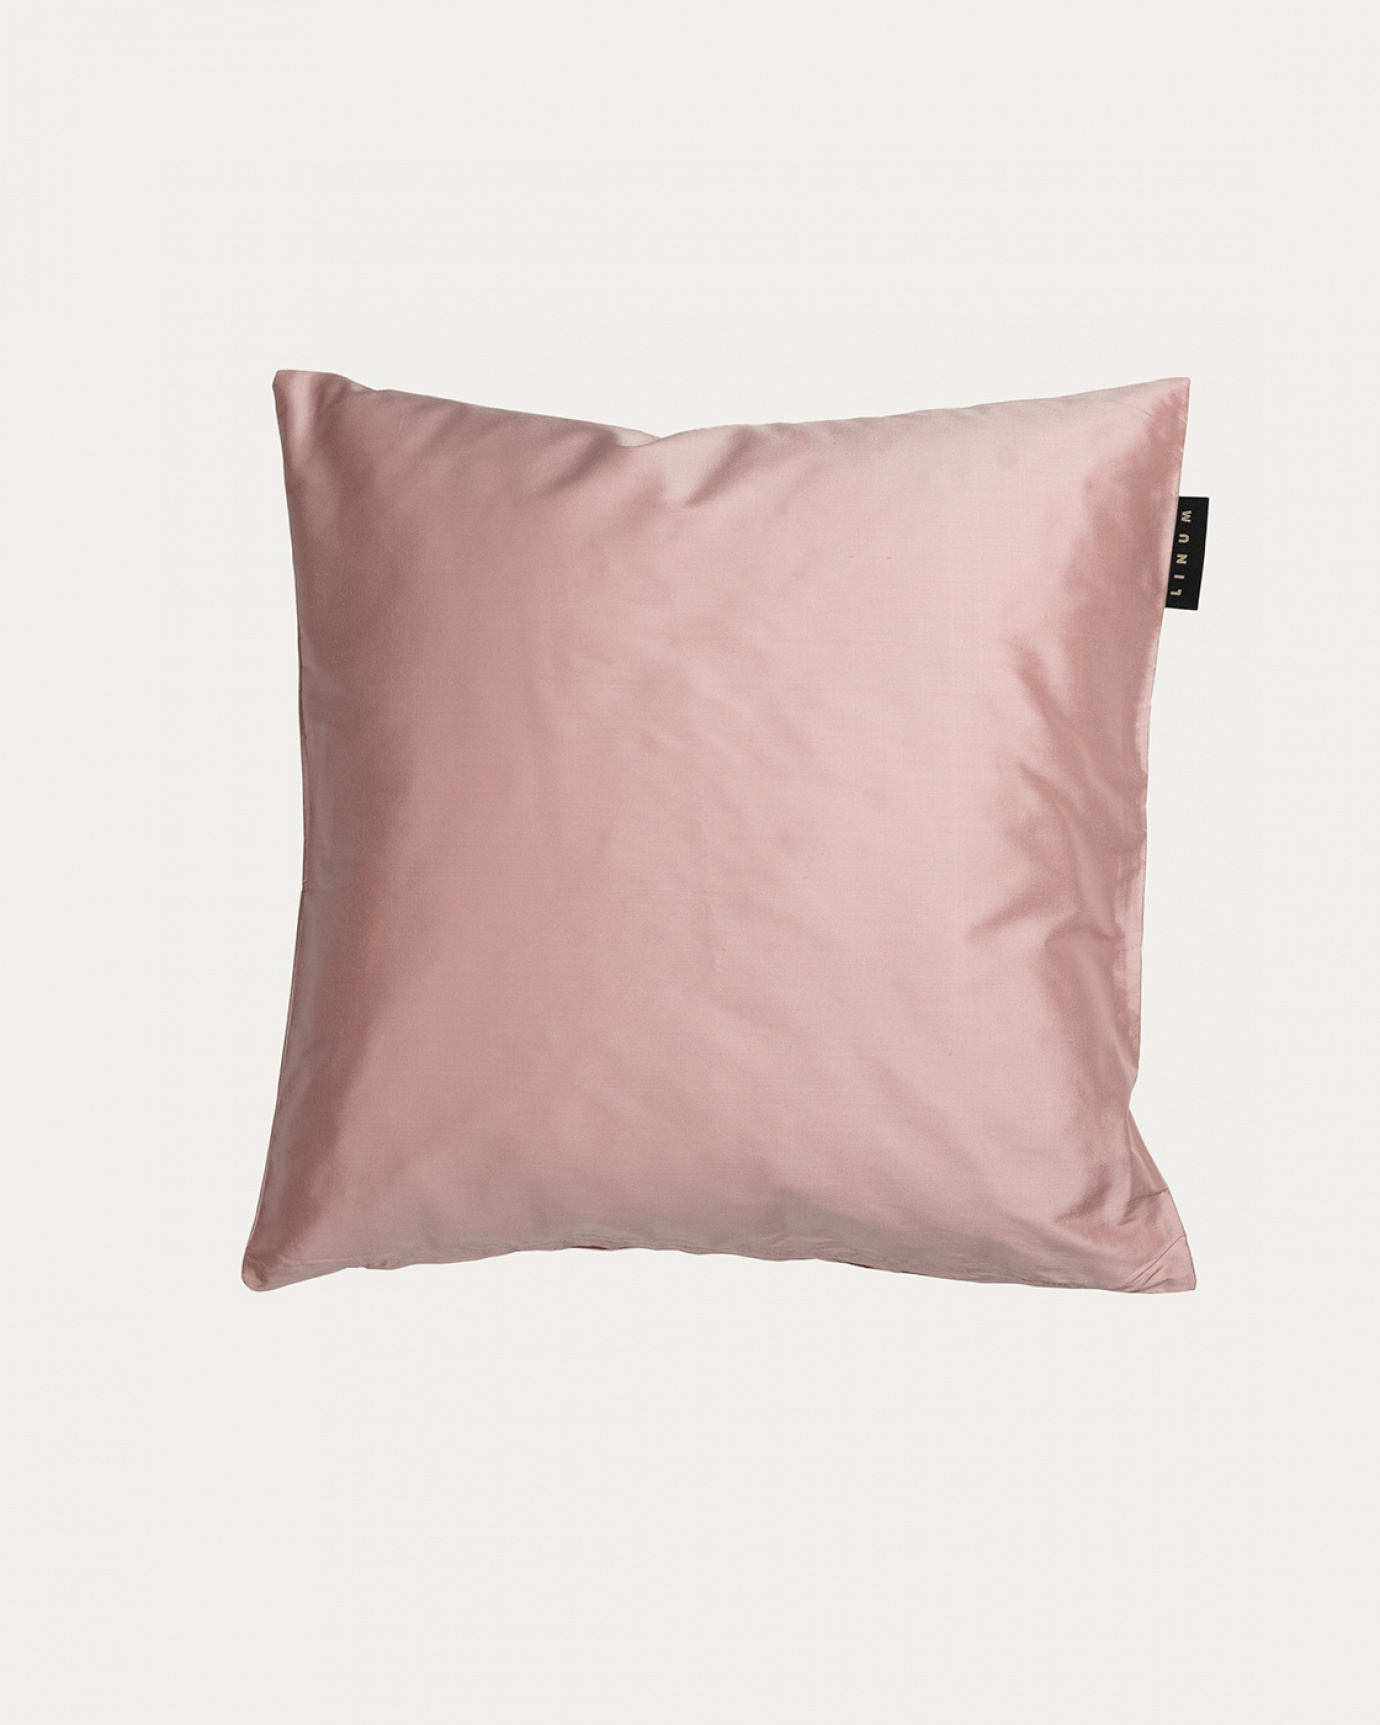 Produktbild dammig rosa SILK kuddfodral av 100% dupionsilke som ger ett fint lyster från LINUM DESIGN. Storlek 40x40 cm.